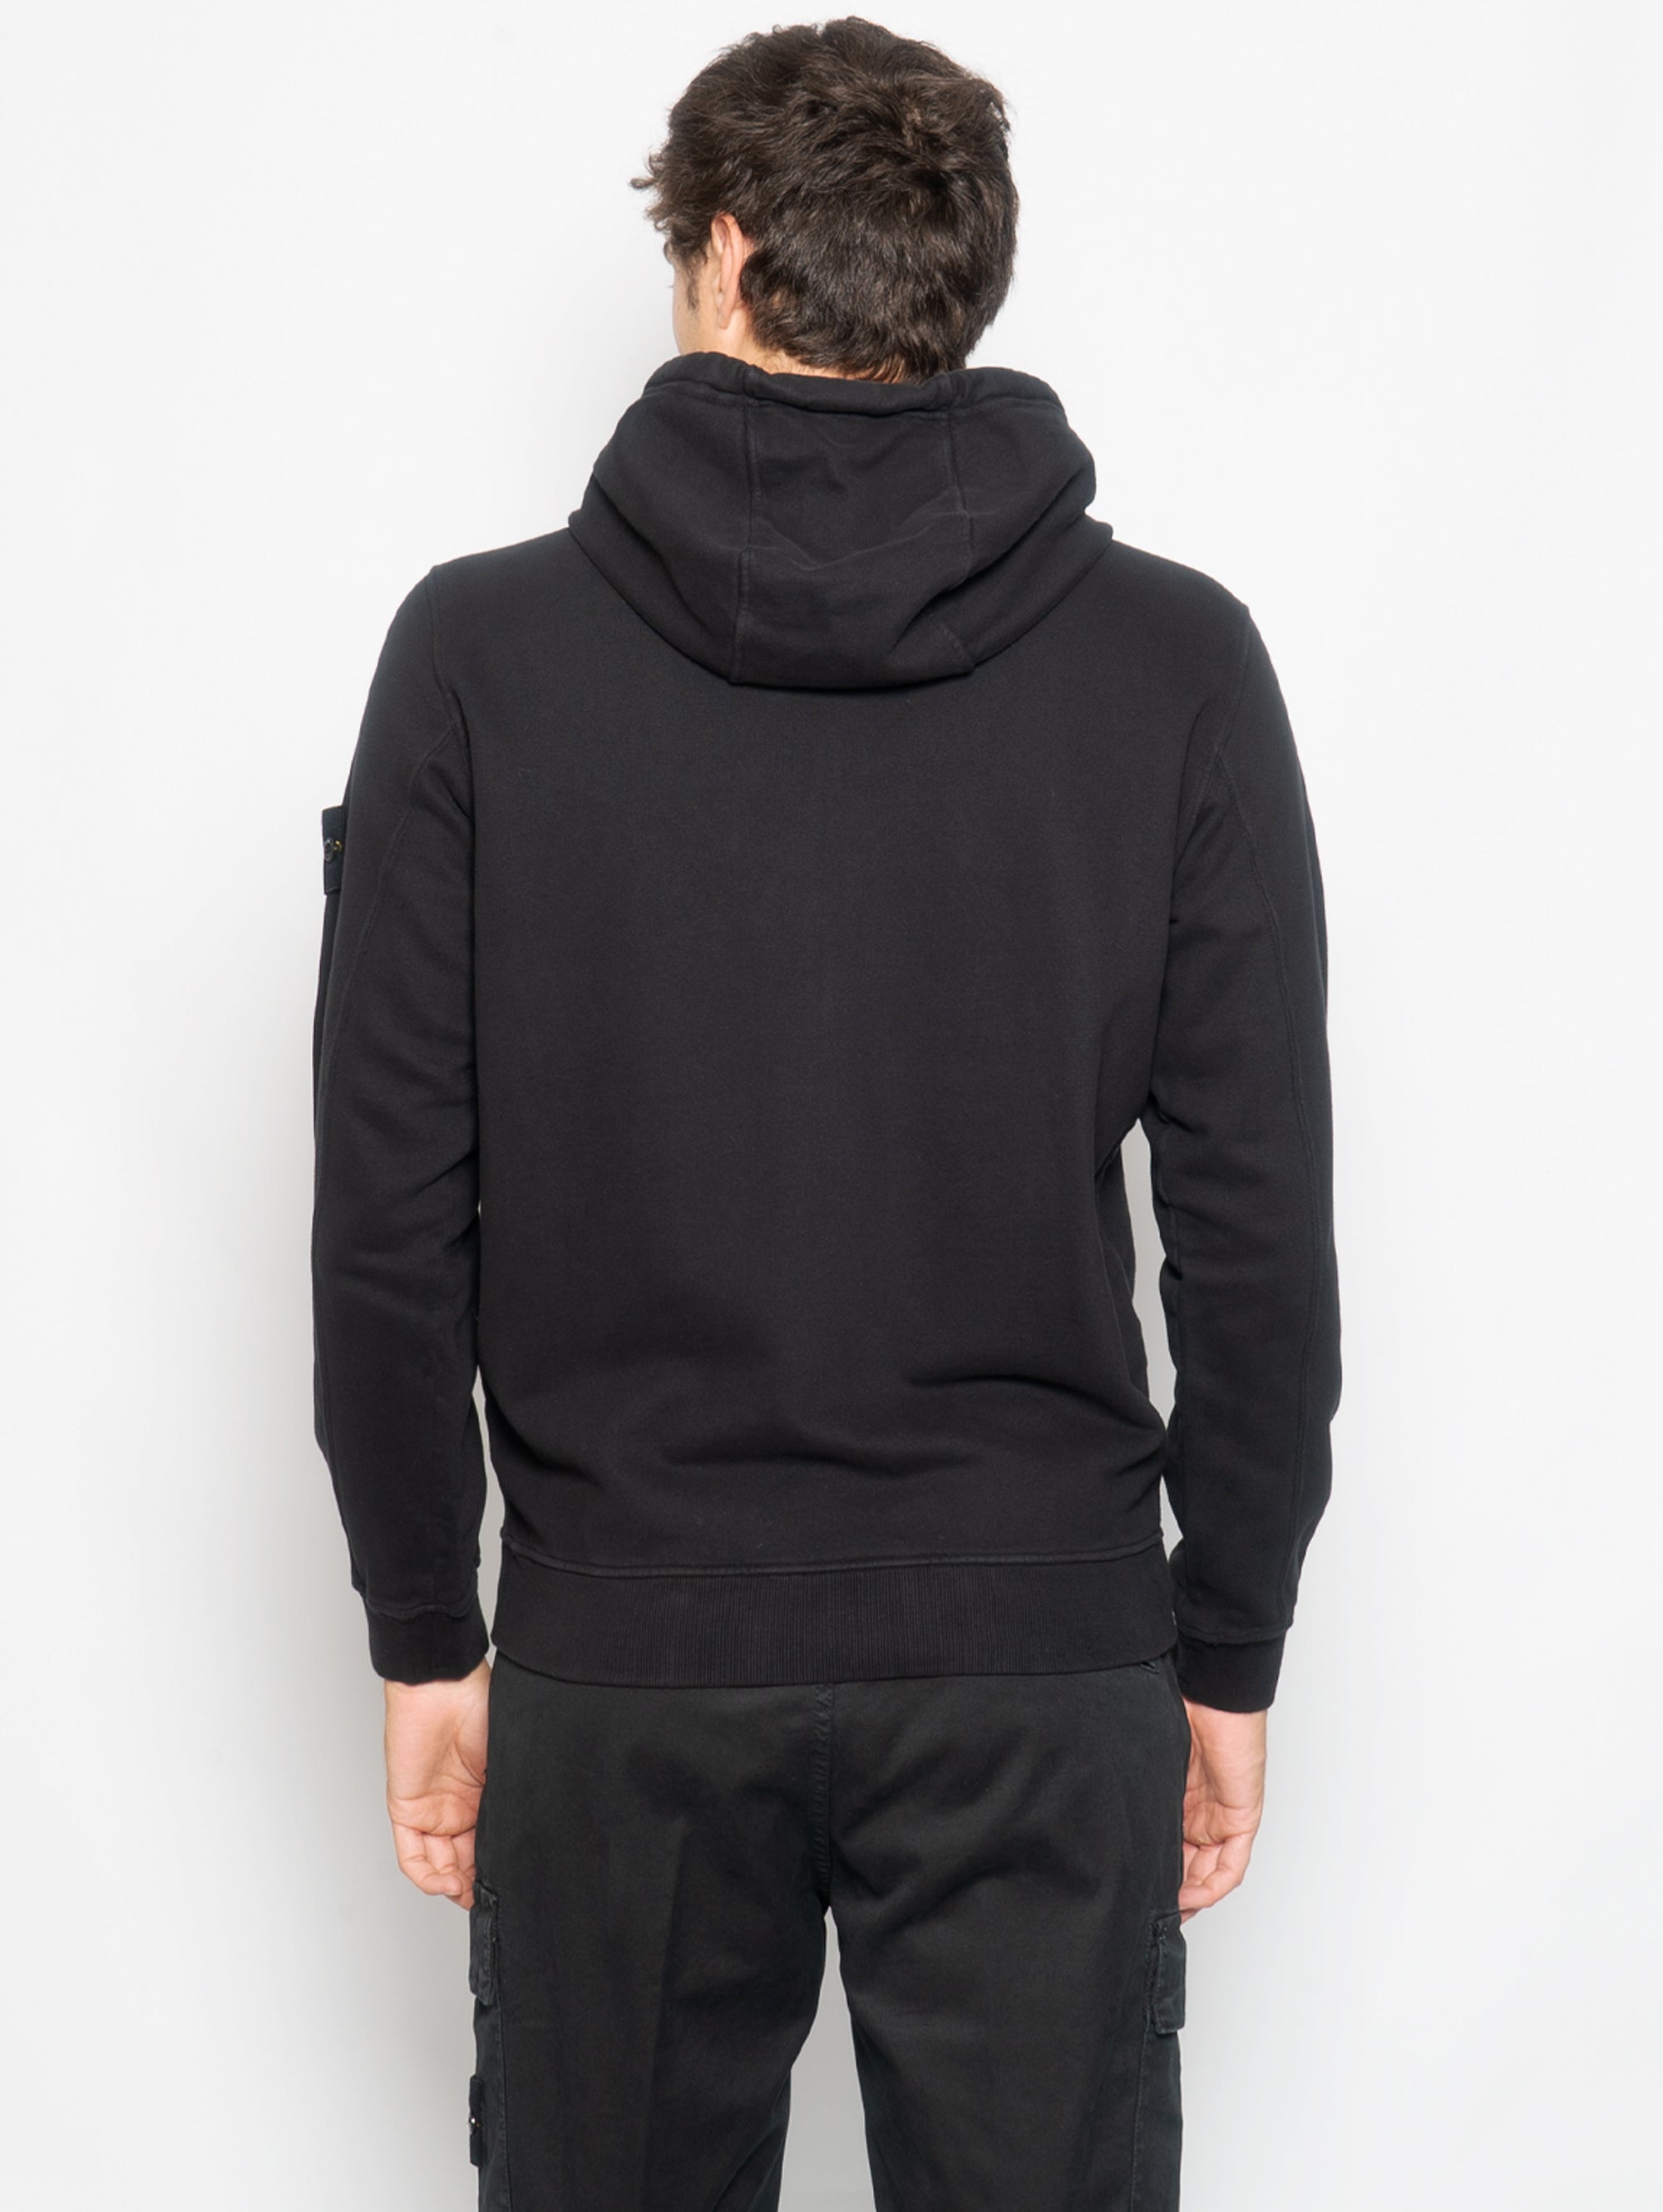 Sweatshirt with Zip and Black Hood